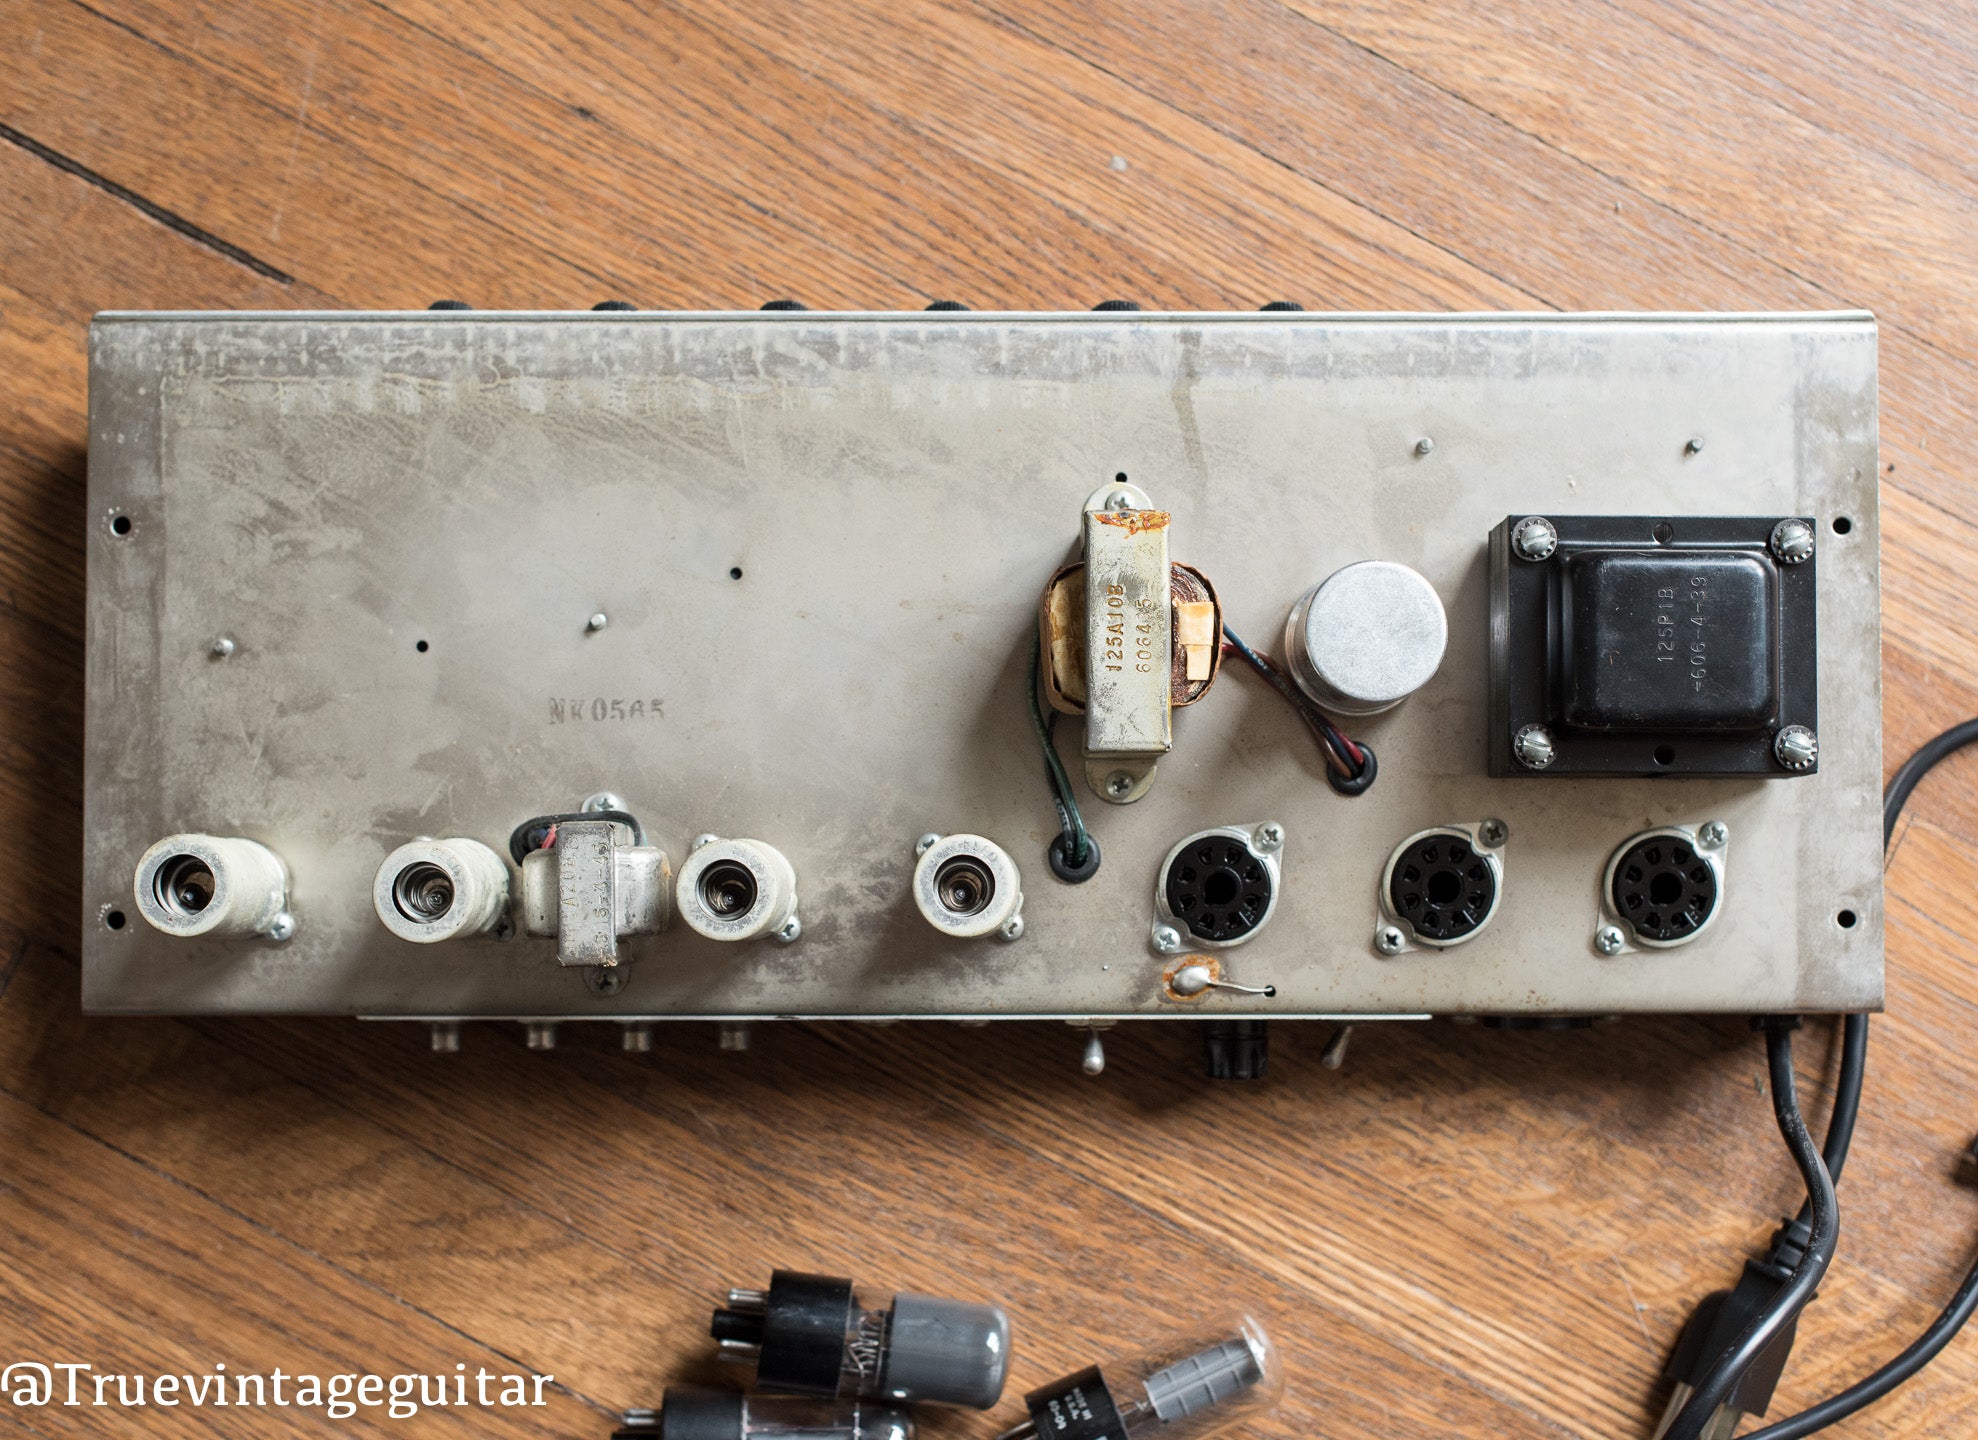 Original output transformer, date codes, Vintage 1965 Fender Princeton Reverb Amp Amplifier